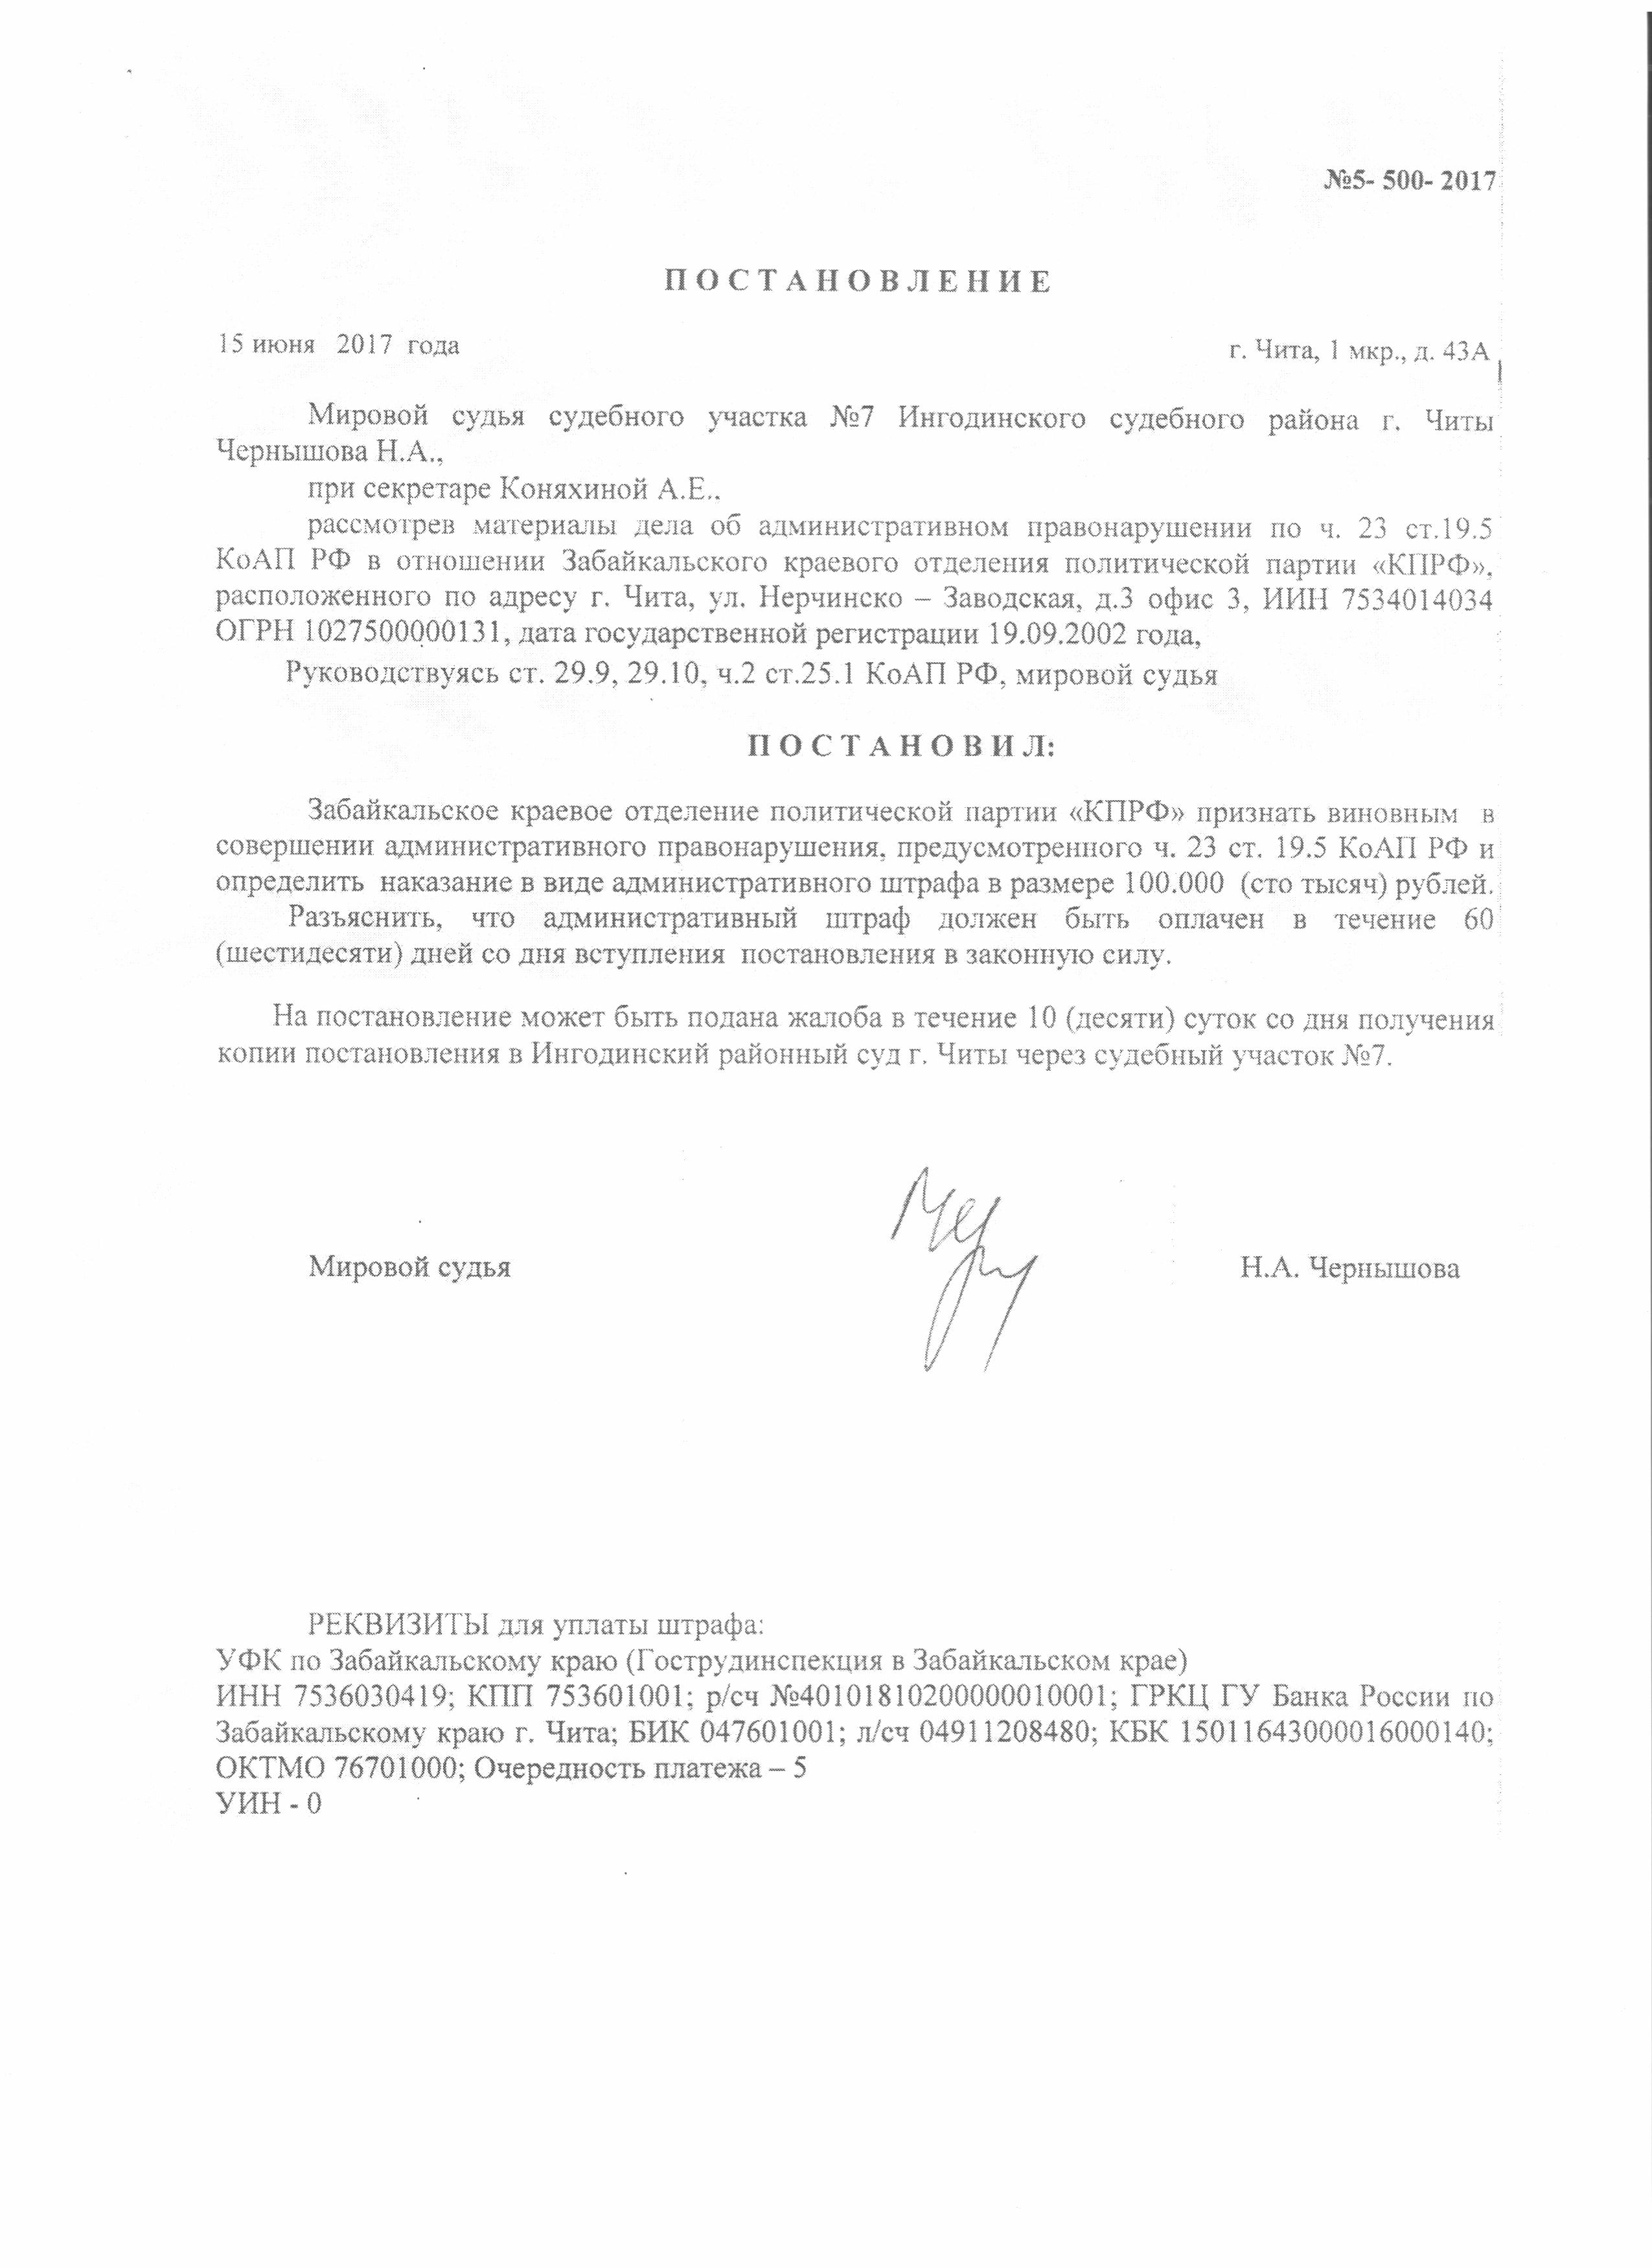 Гайдука оштрафовали на 40 тыс р за невыполнение предписания инспекции труда